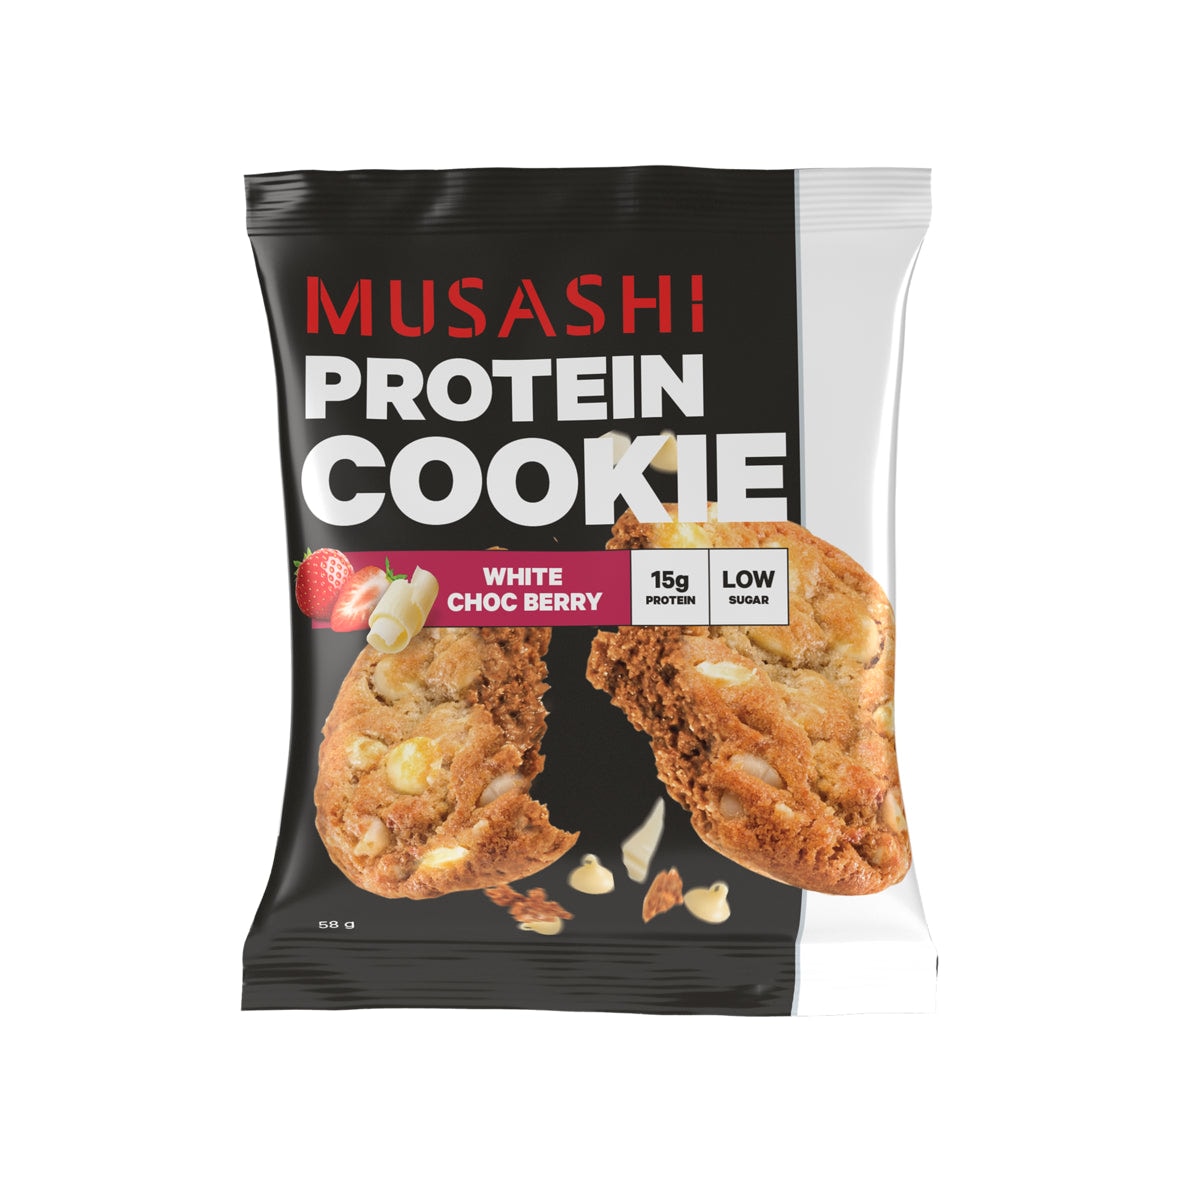 Musashi White Choc Berry Protein Cookie 12 x 58g